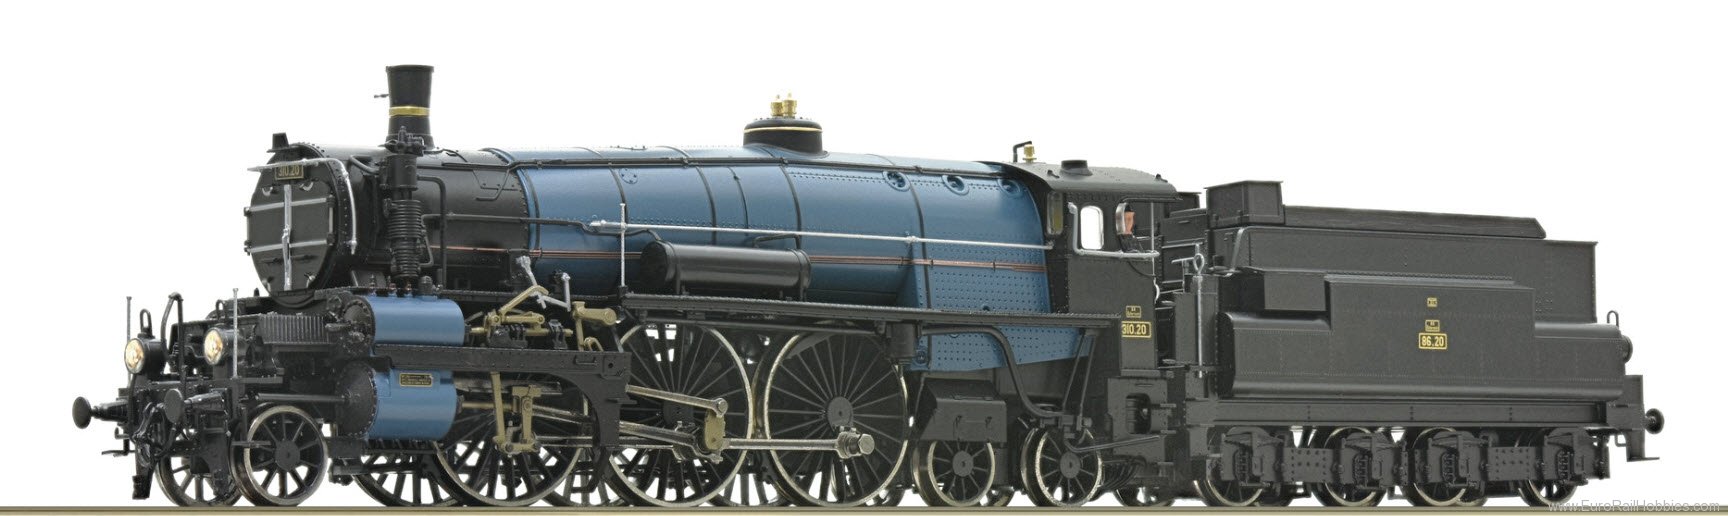 Roco 7100012 Steam locomotive 310.20, BBÃ (DC Analog)